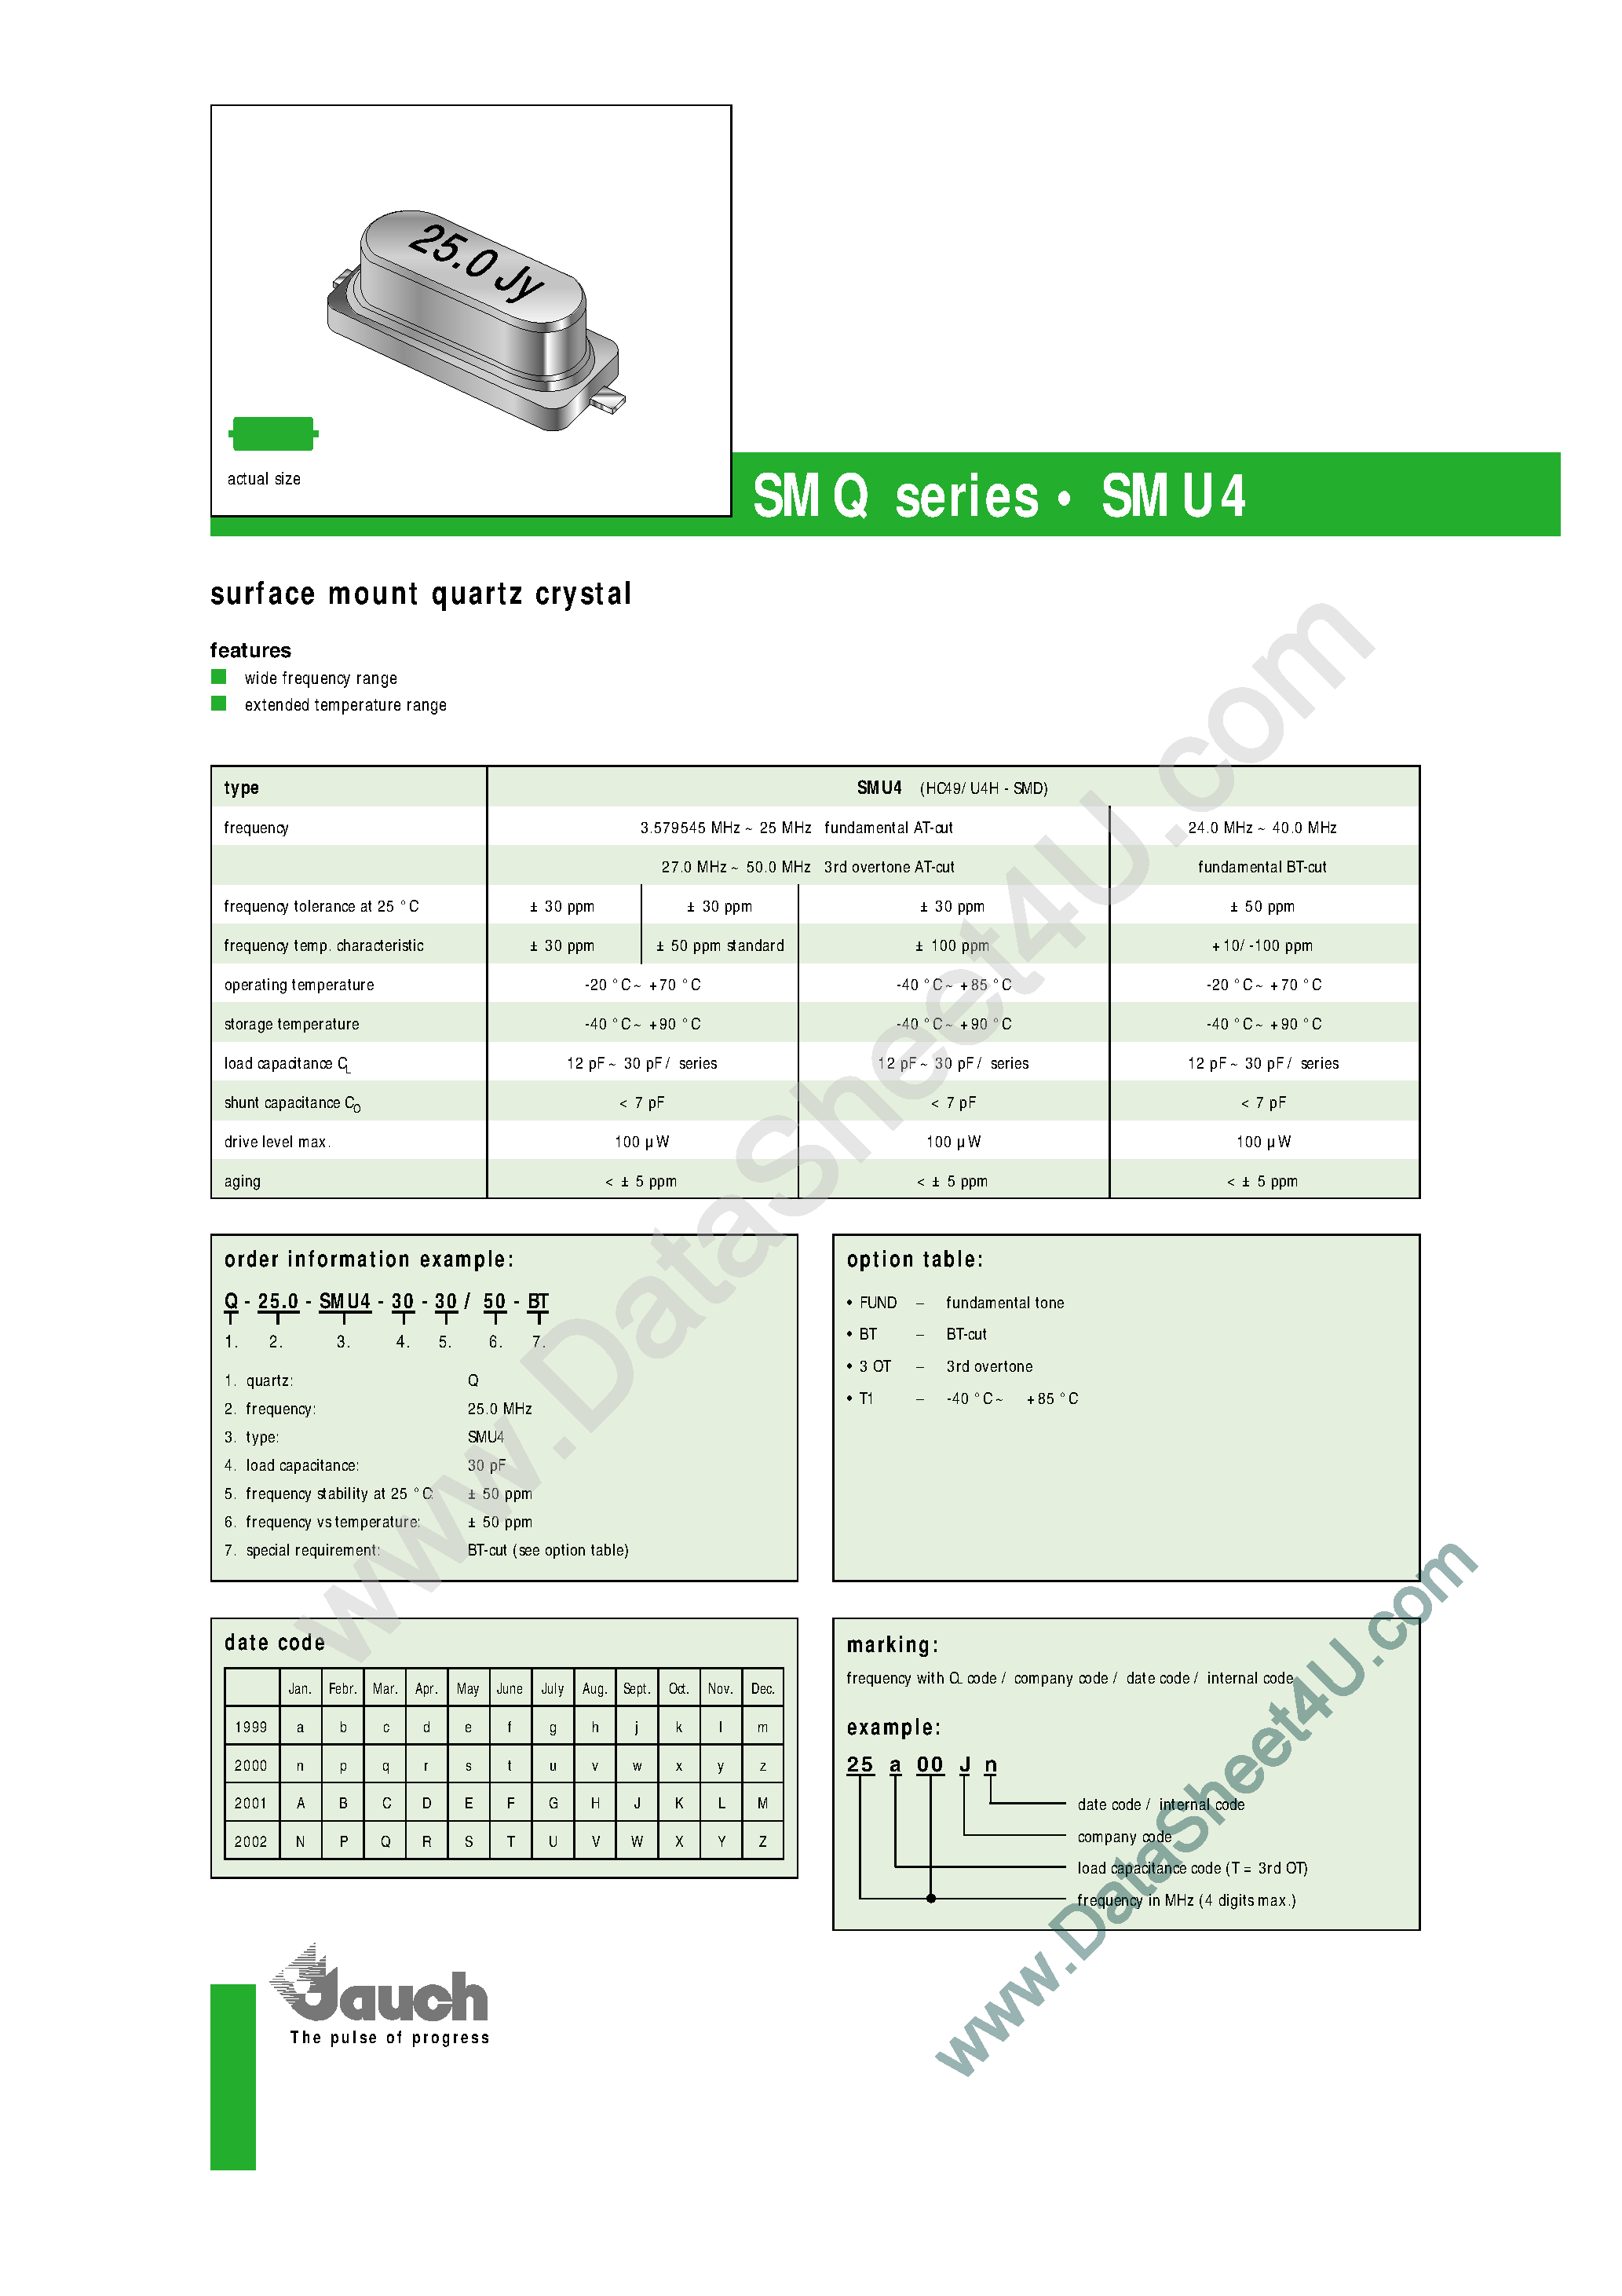 Даташит Q-25.0-SMU4-18-30 - (SMU4 Series) Surface Mount Quartz Crystal страница 1